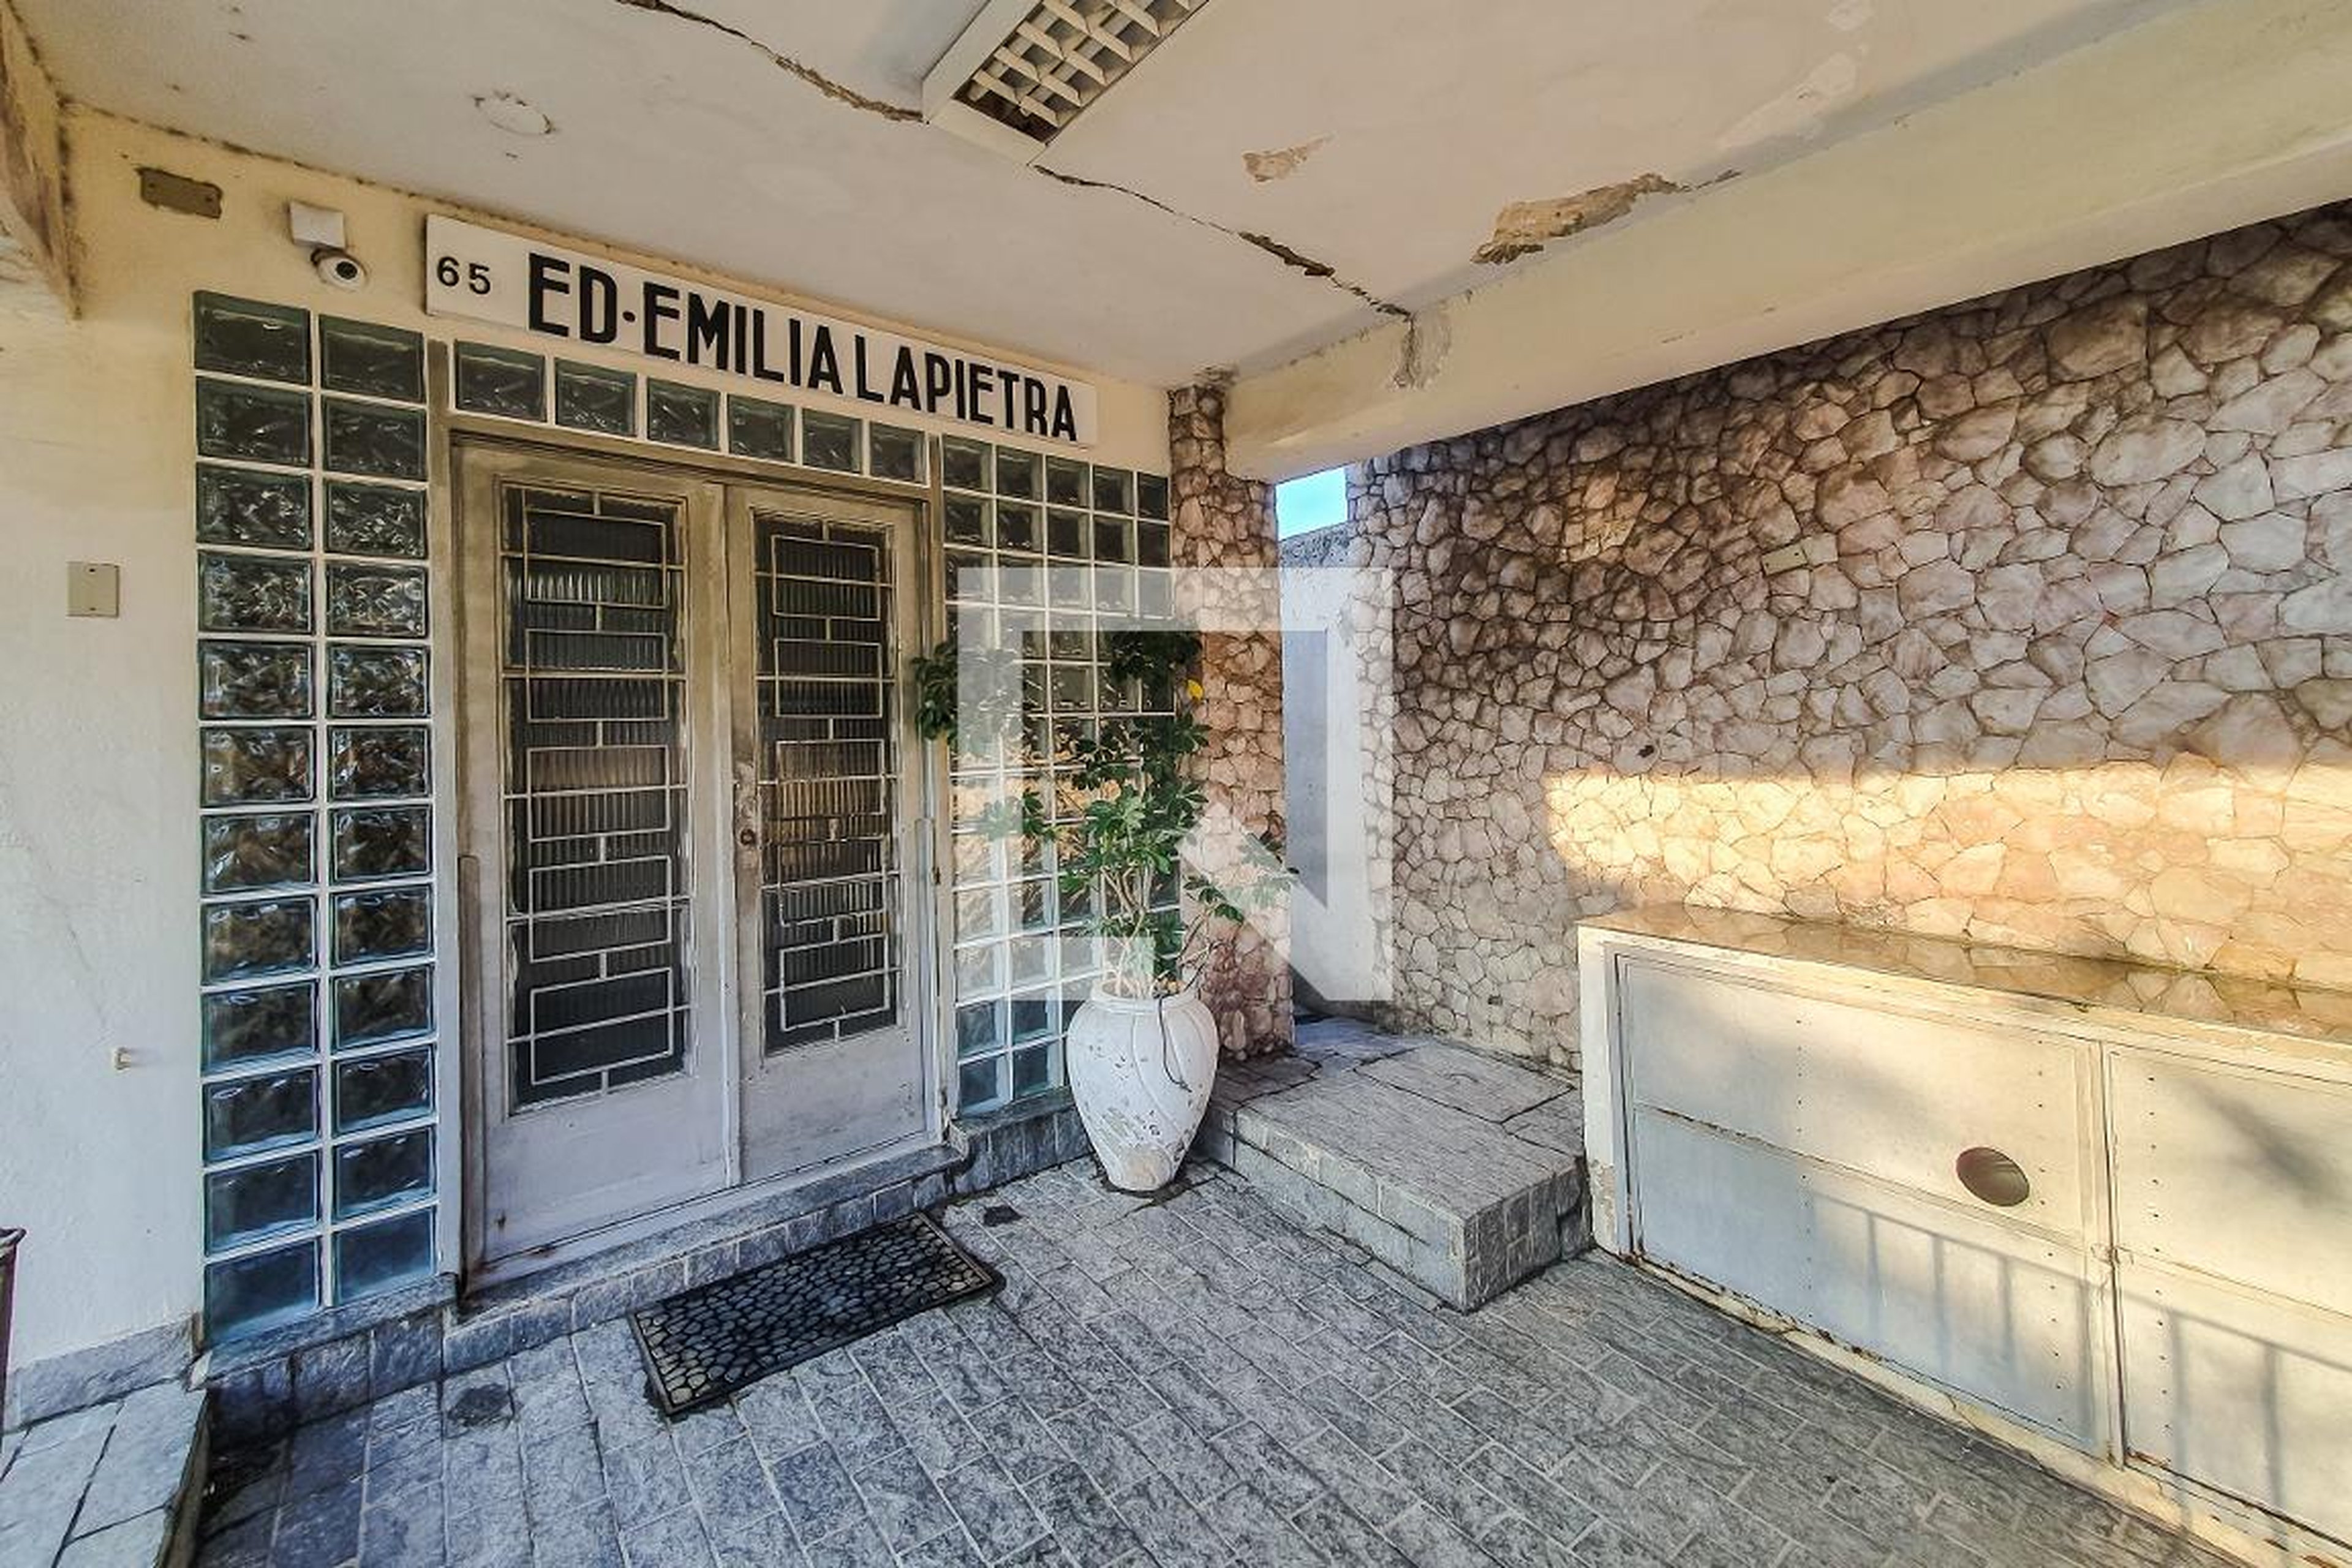 Hall de entrada - Emilia Lapietra